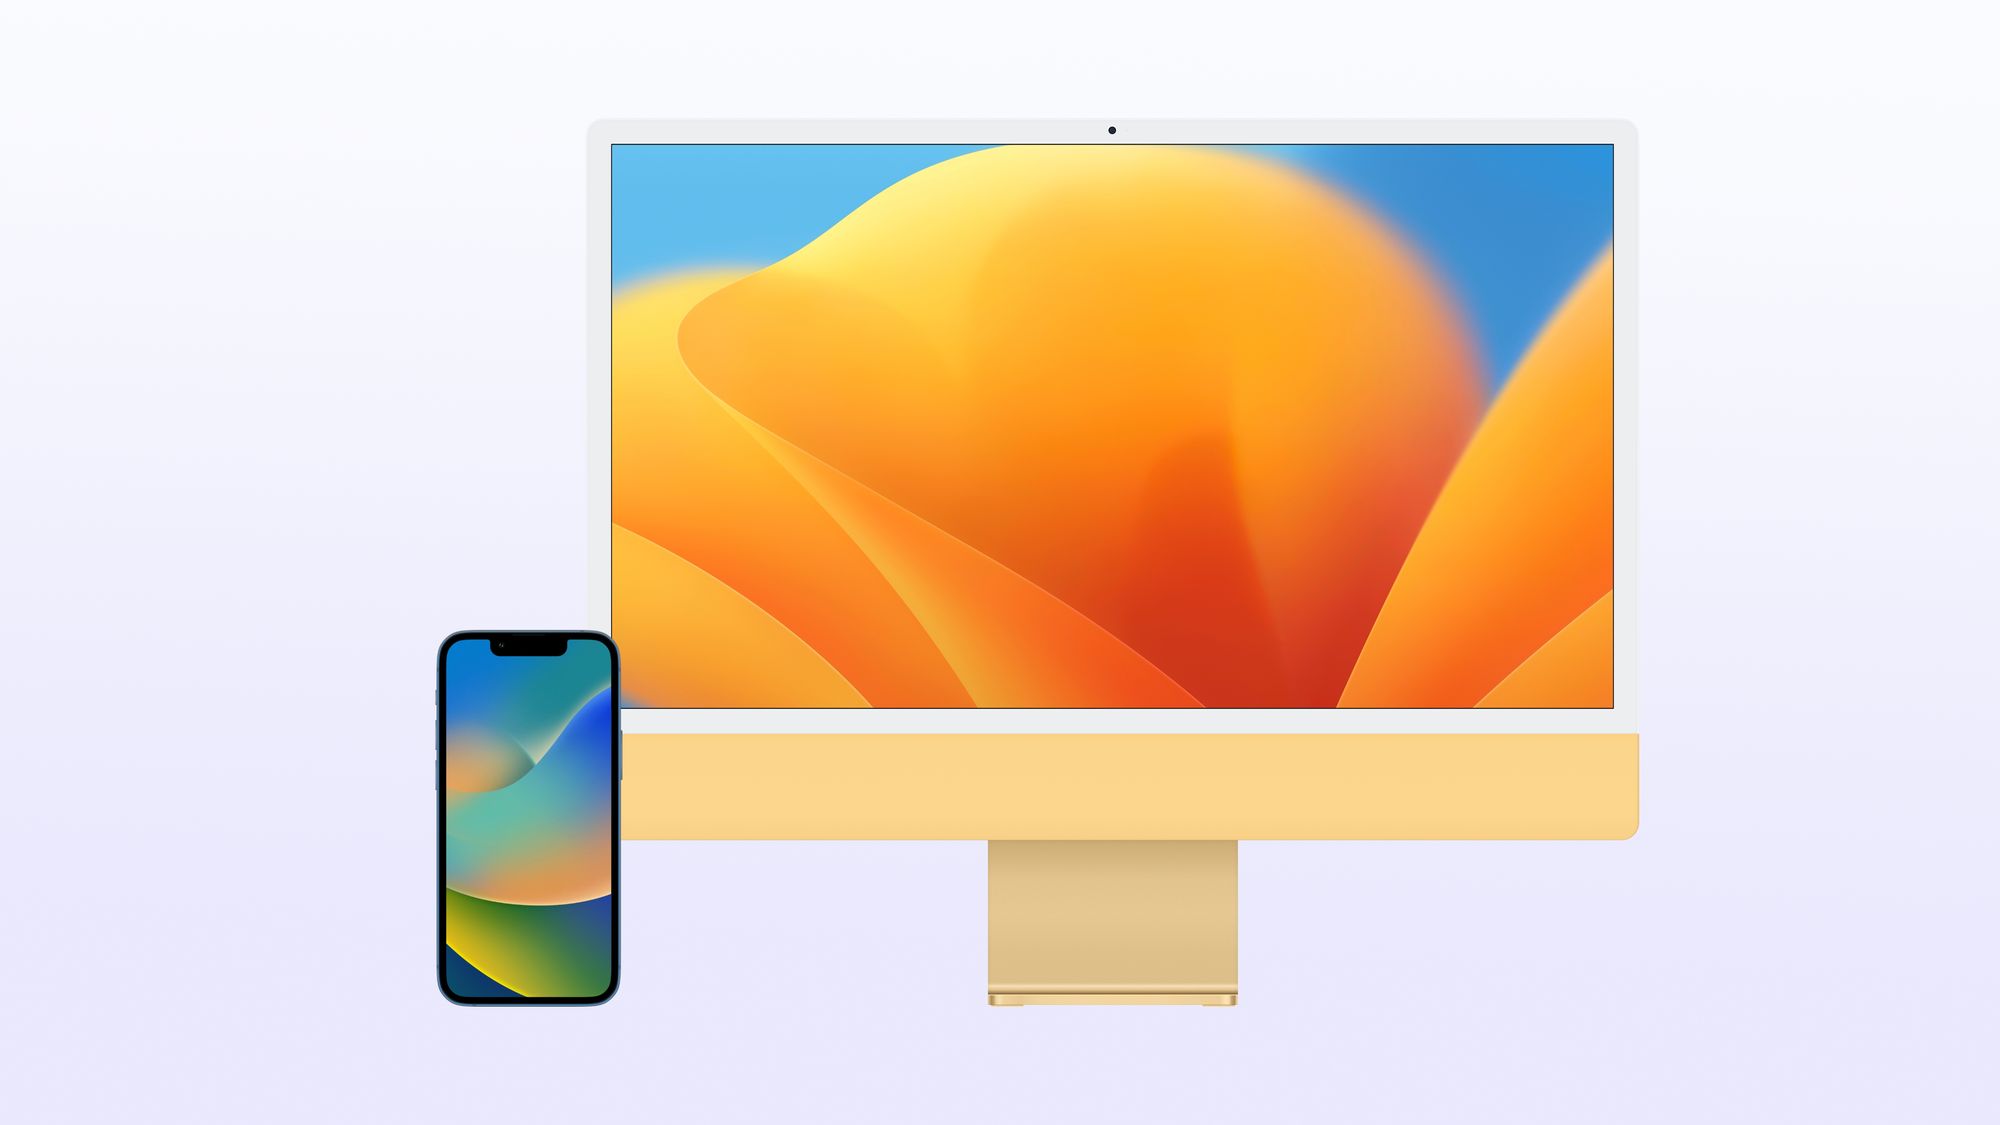 Descarrega AQUI os Wallpapers oficiais do iOS 16 e macOS Ventura!